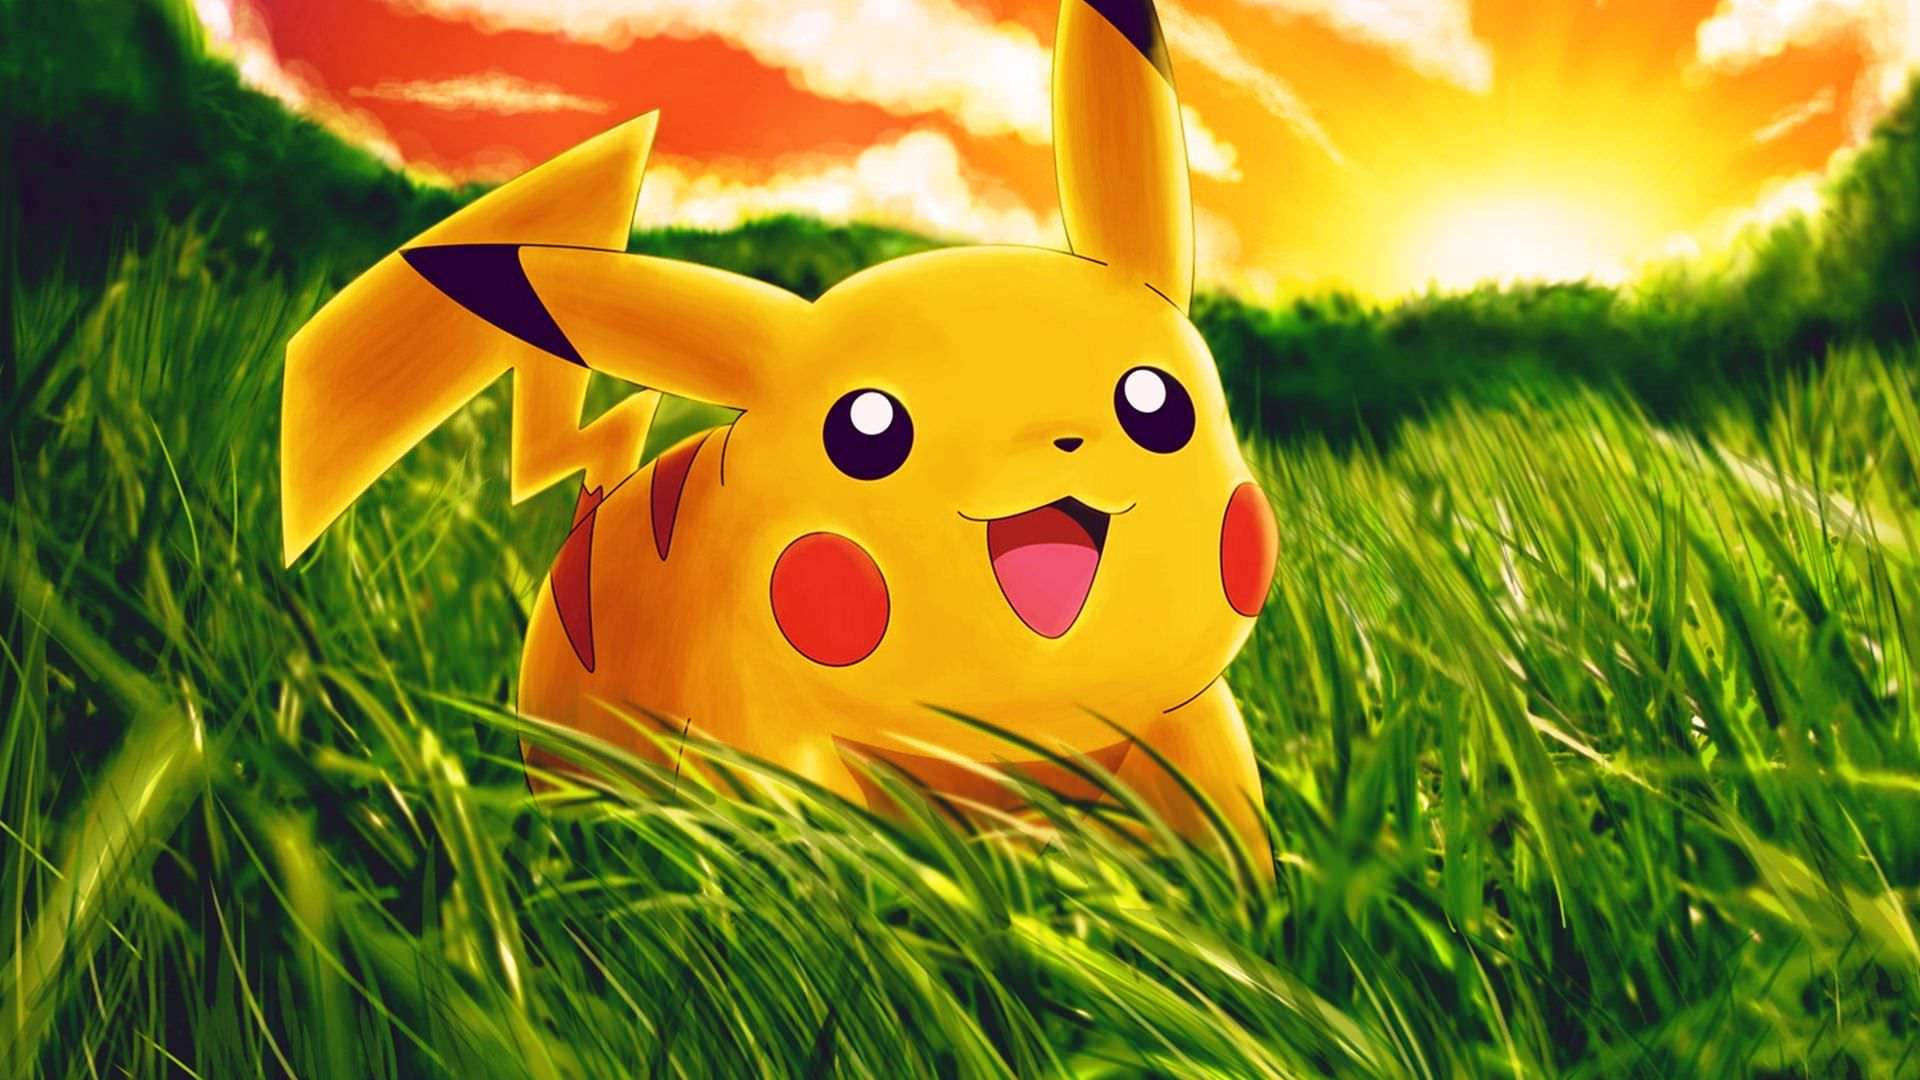 Download Cute Pikachu Pokemon Wallpaper 